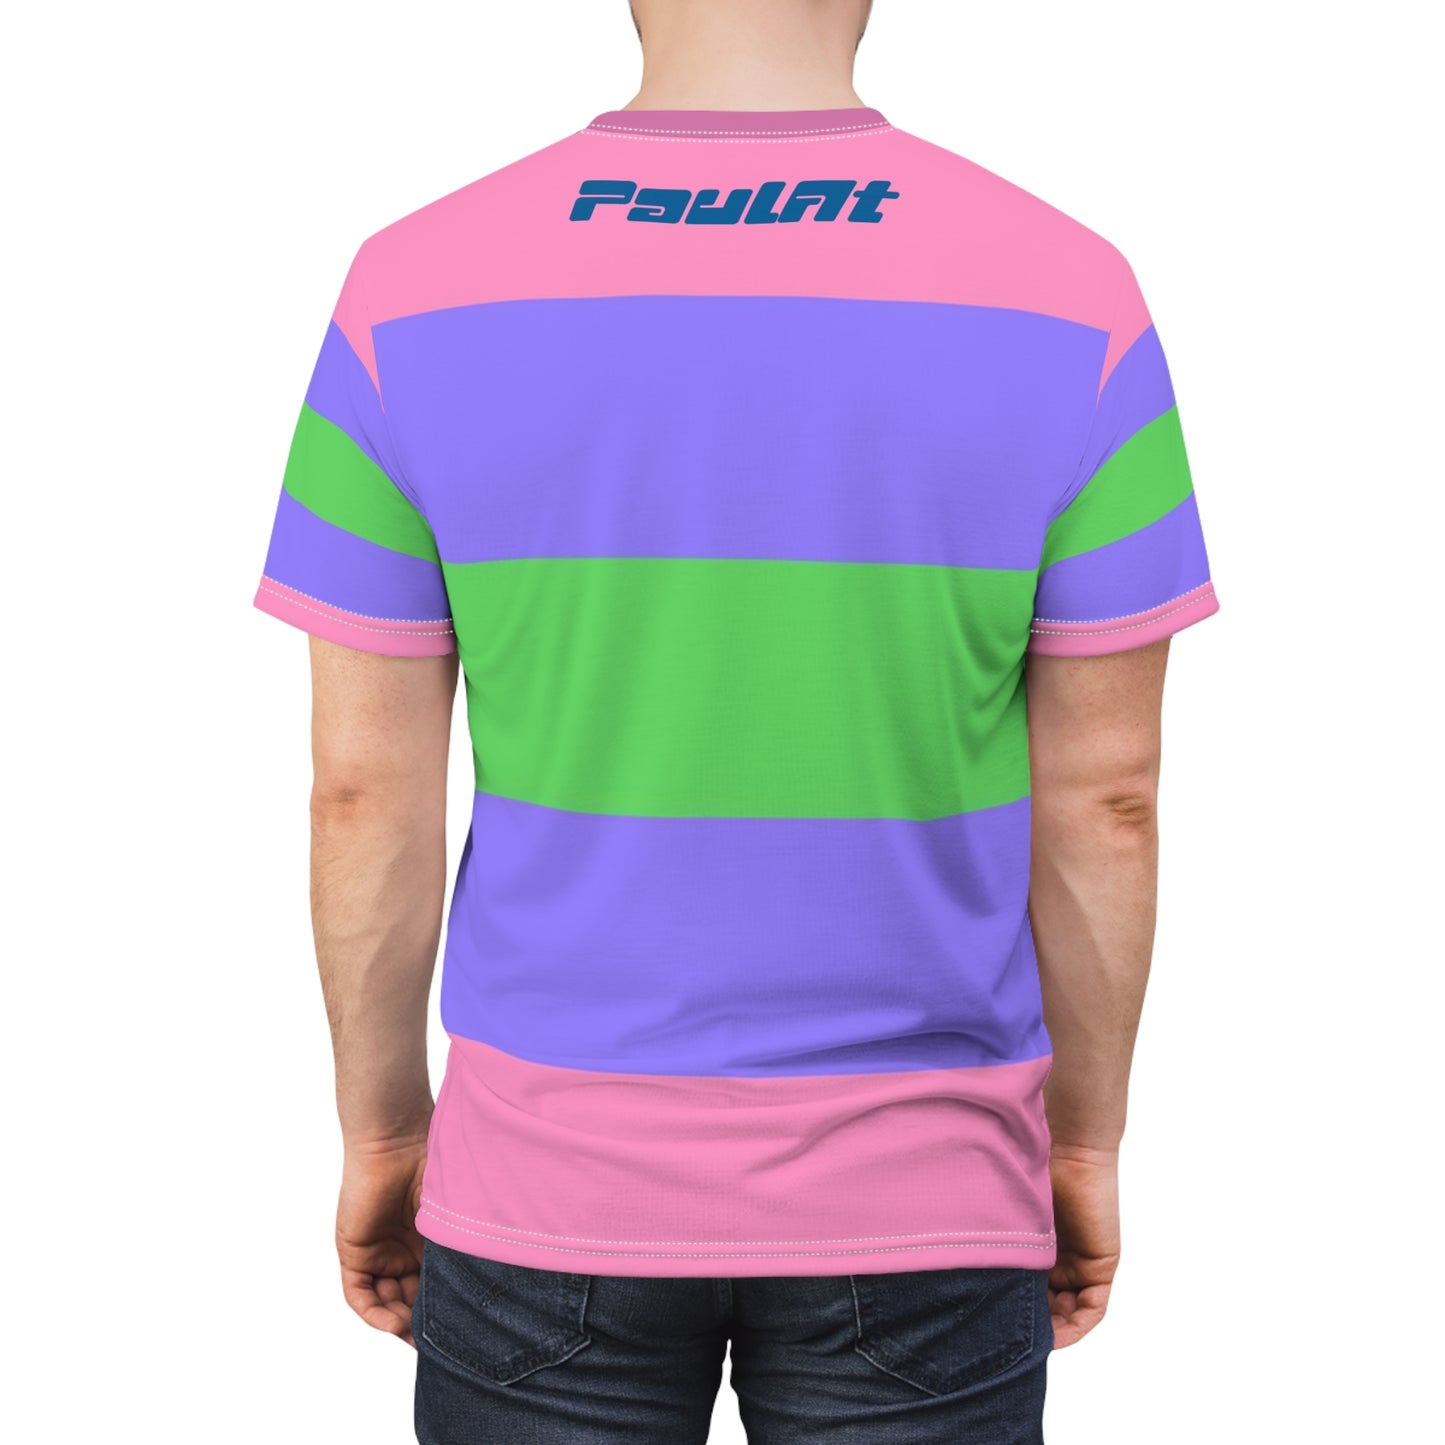 Trigender Pride Unisex T-Shirt